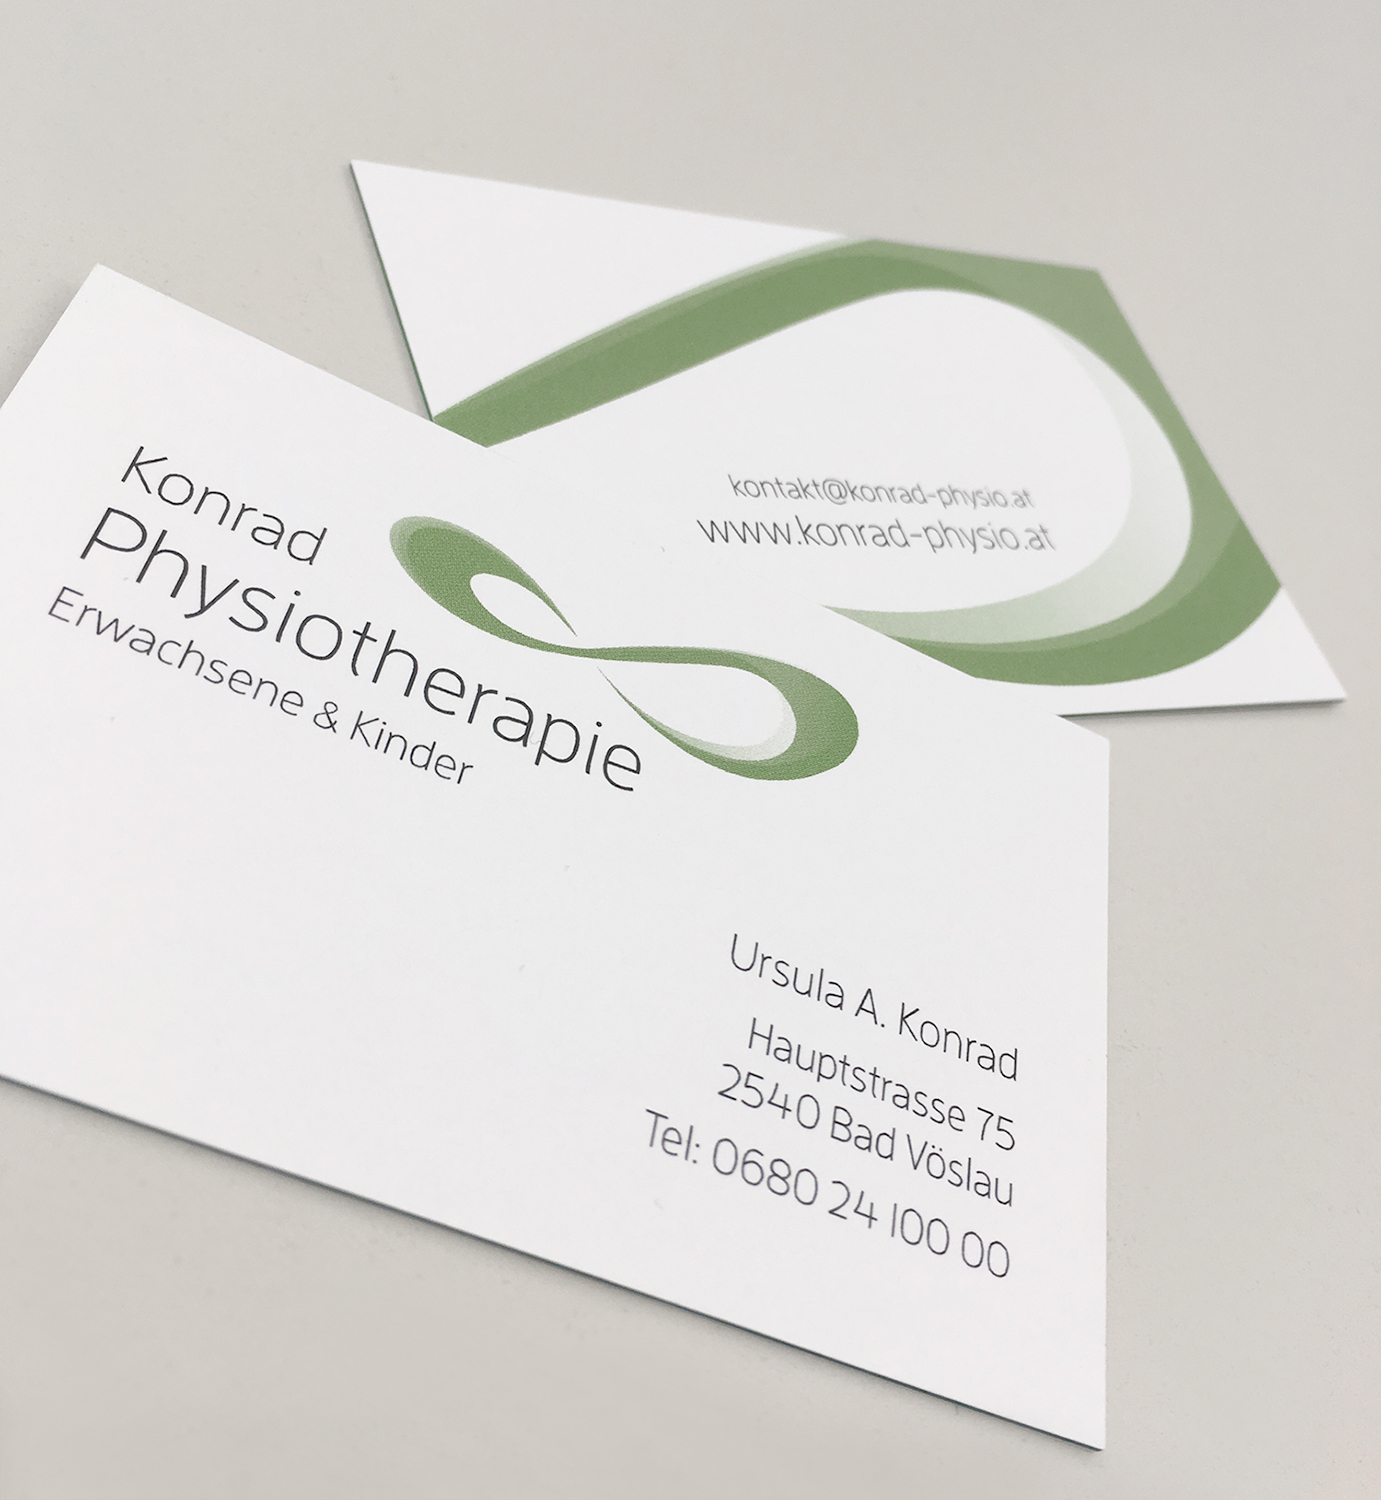 Konrad - Physio - Business Cards